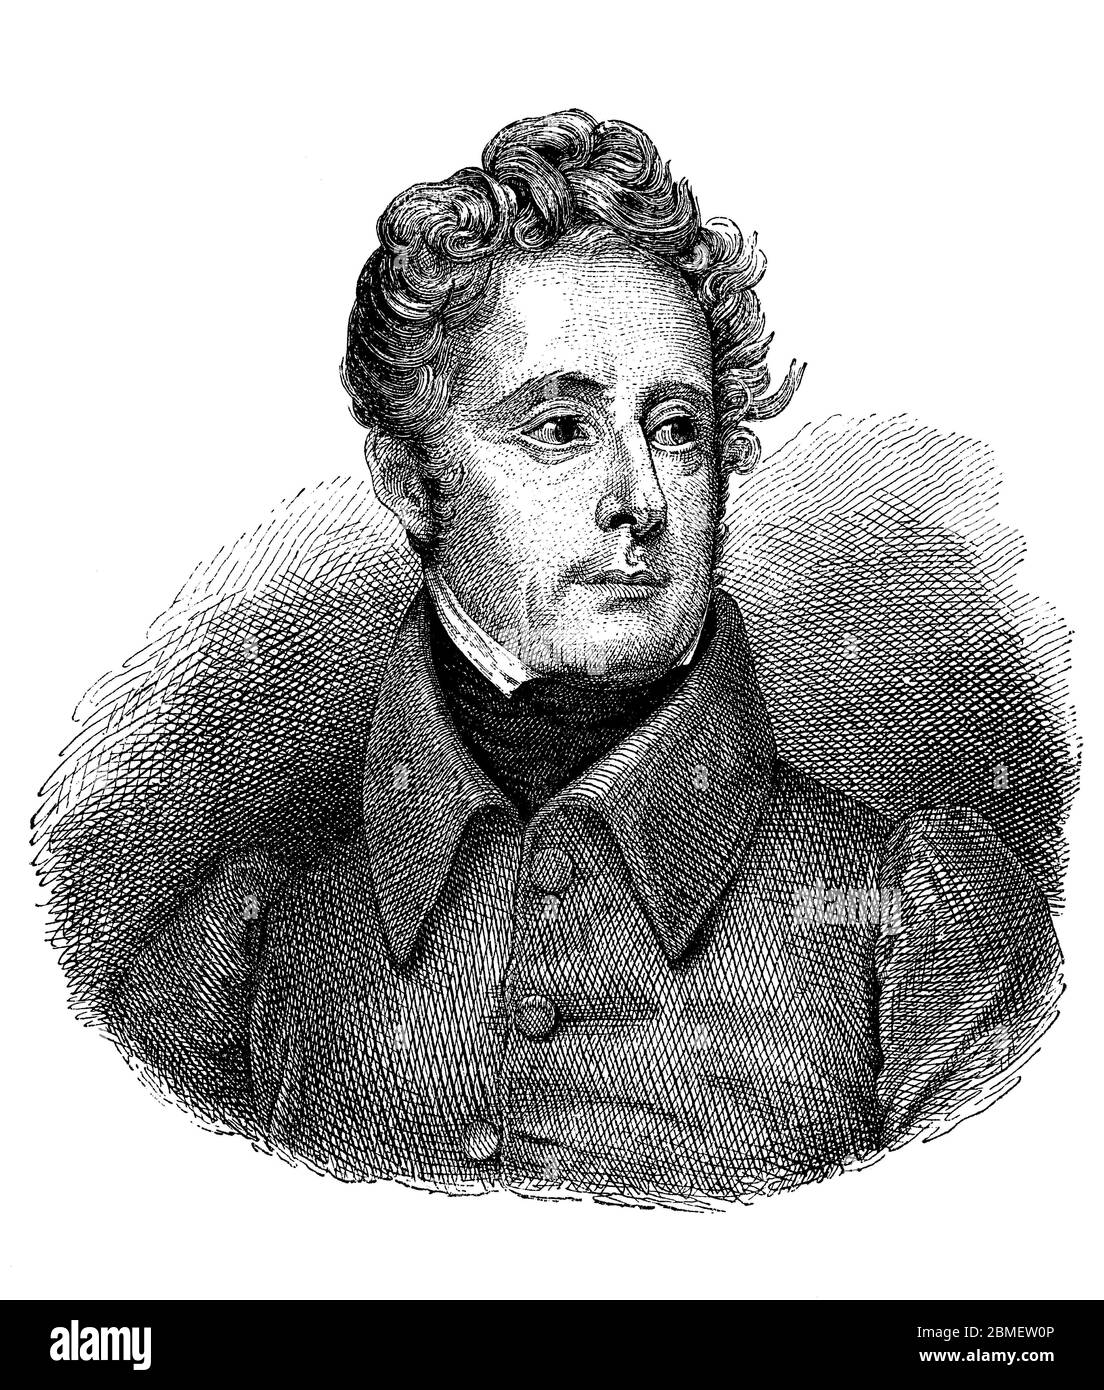 Alphonse Marie Louise Prat de Lamartine (1790-1869), noble, escritor, poeta y político francés. Grabado de 1913. Stock Photo